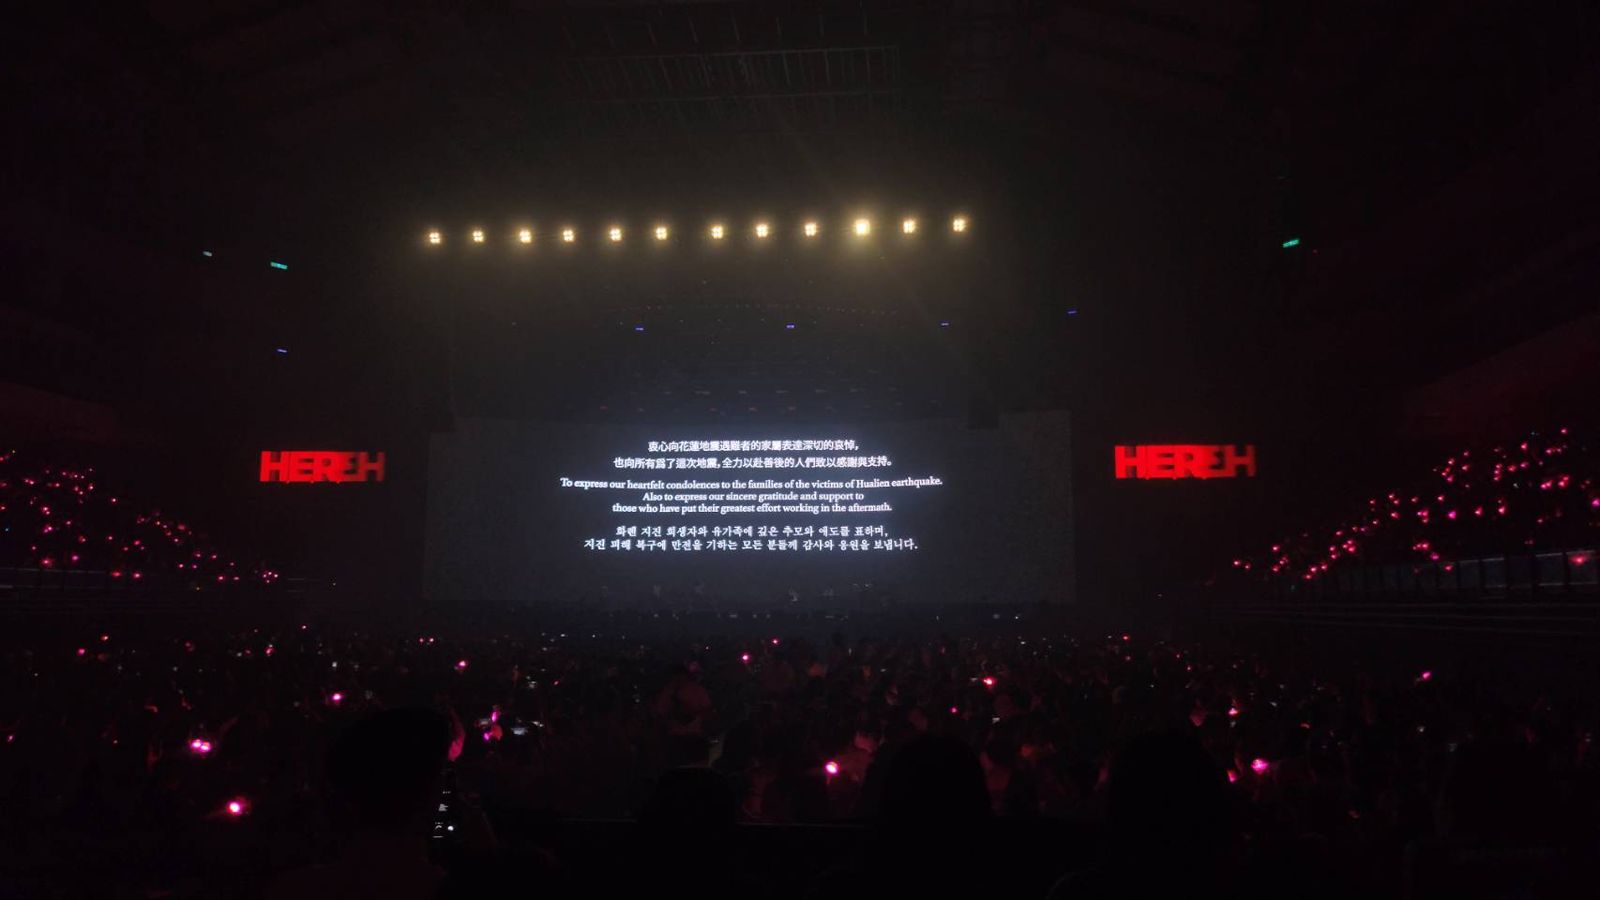 第一場演唱會結尾，IU以〈Love Poem〉伴以關心花蓮震災的訊息，今日雖然沒有演唱這首歌，但IU對震災的關心仍讓歌迷感到窩心。（讀者提供）